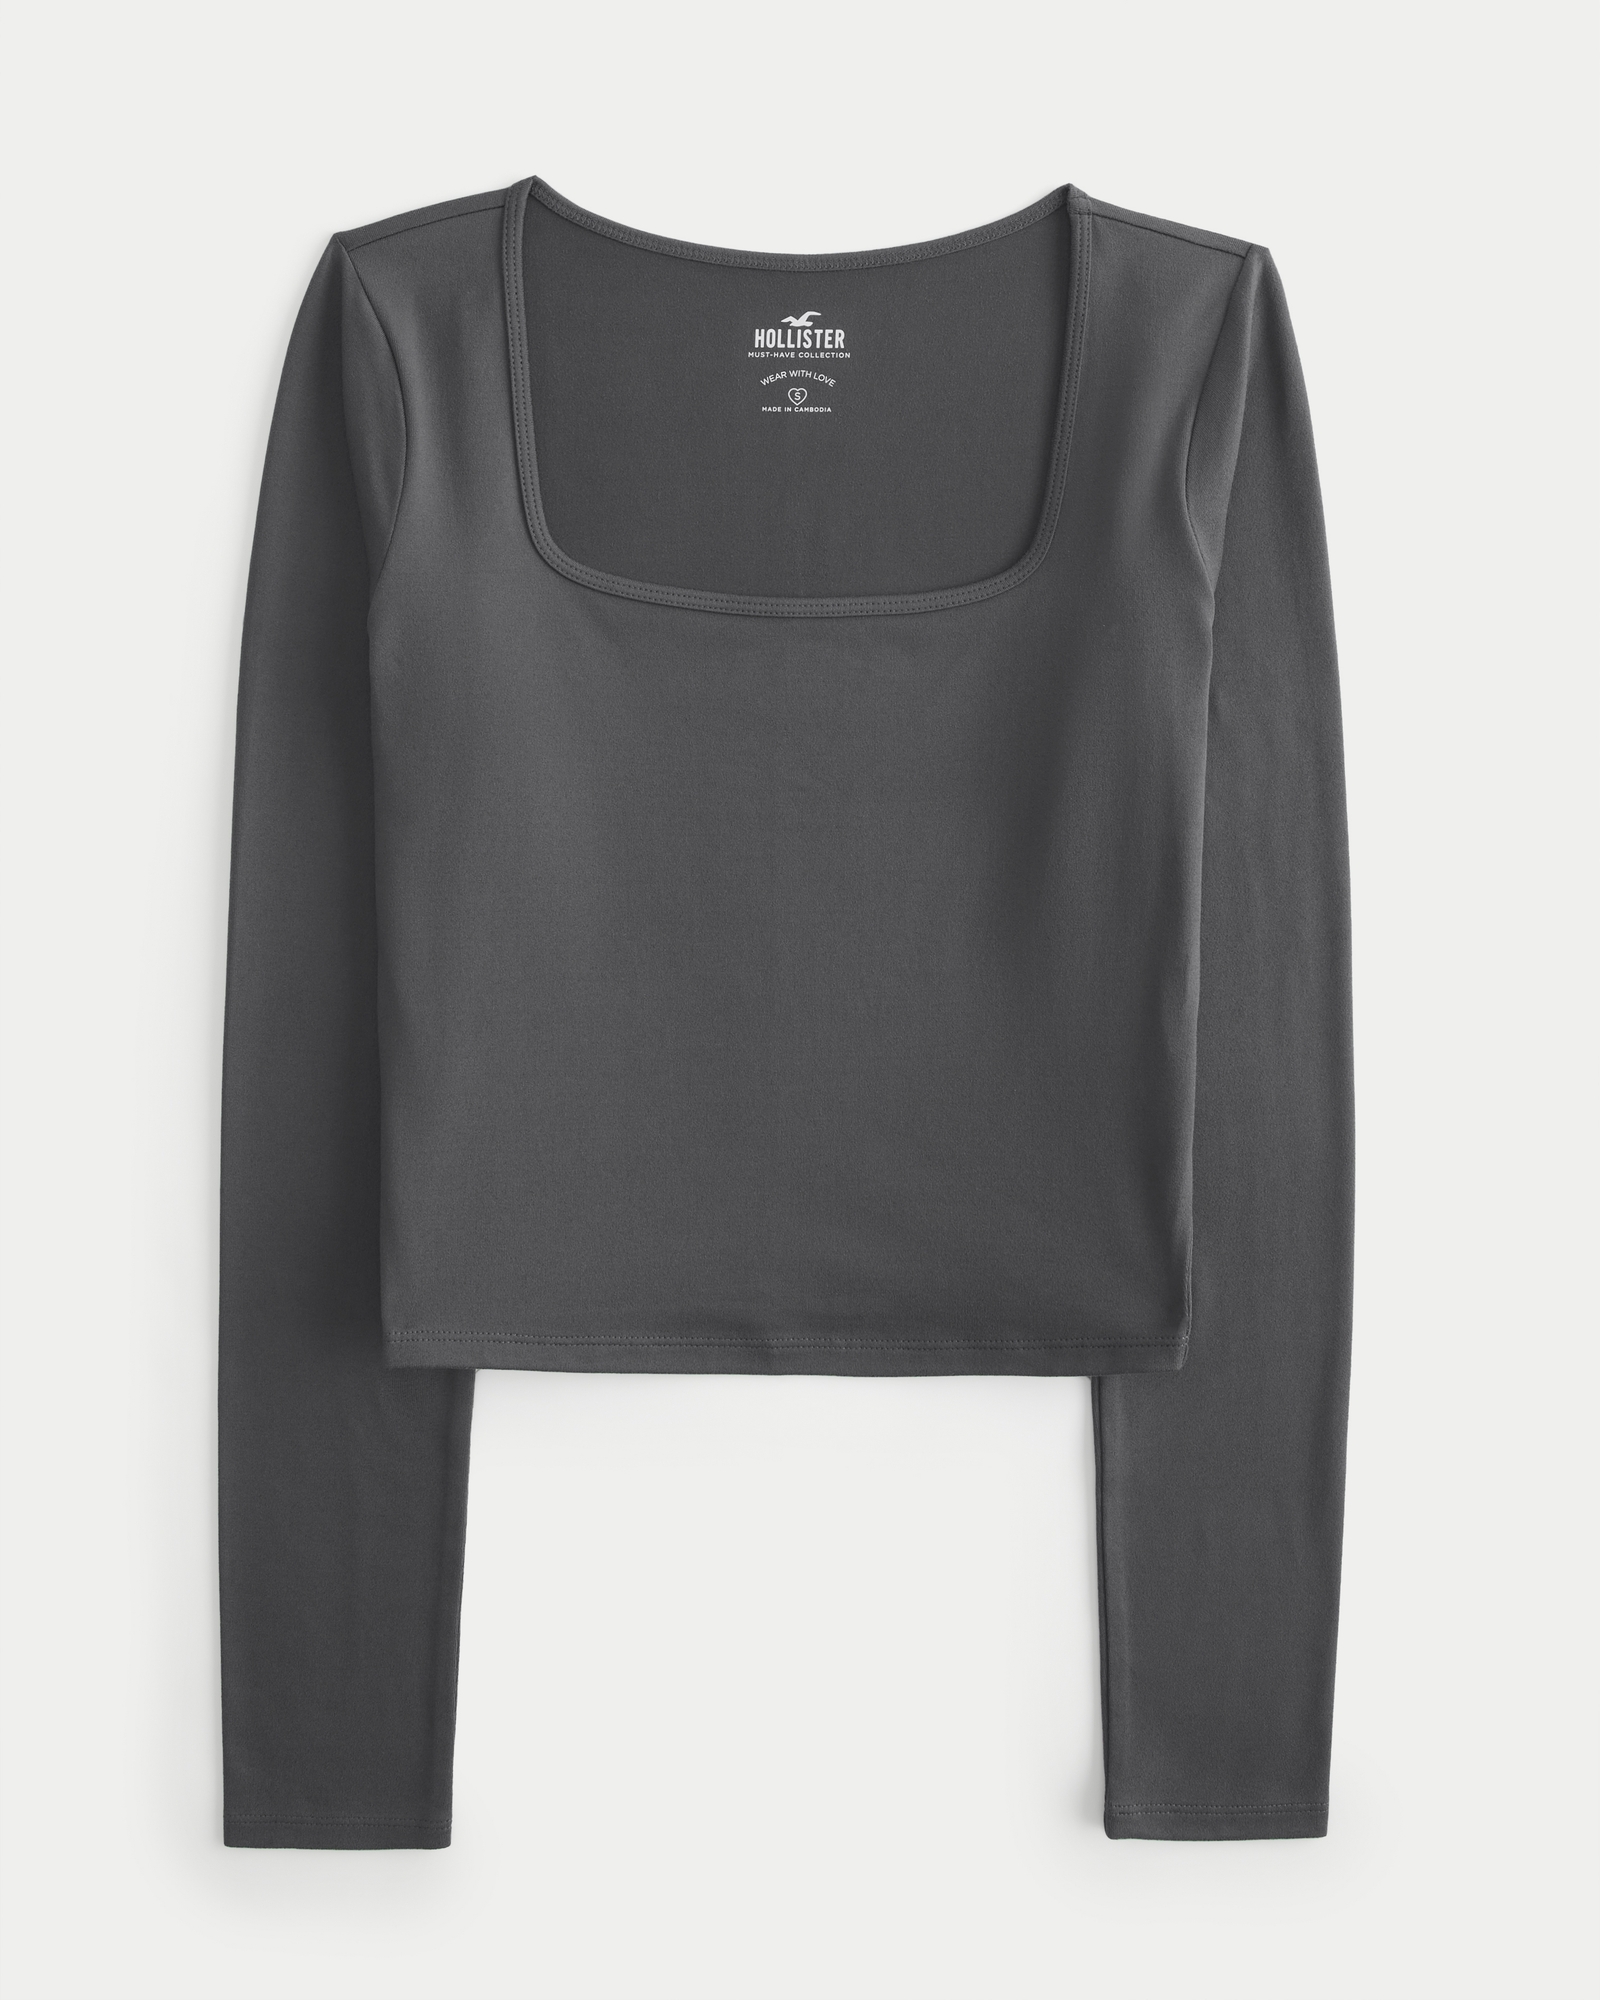 Hollister Women's Long Sleeve Woven Button Up Shirt 